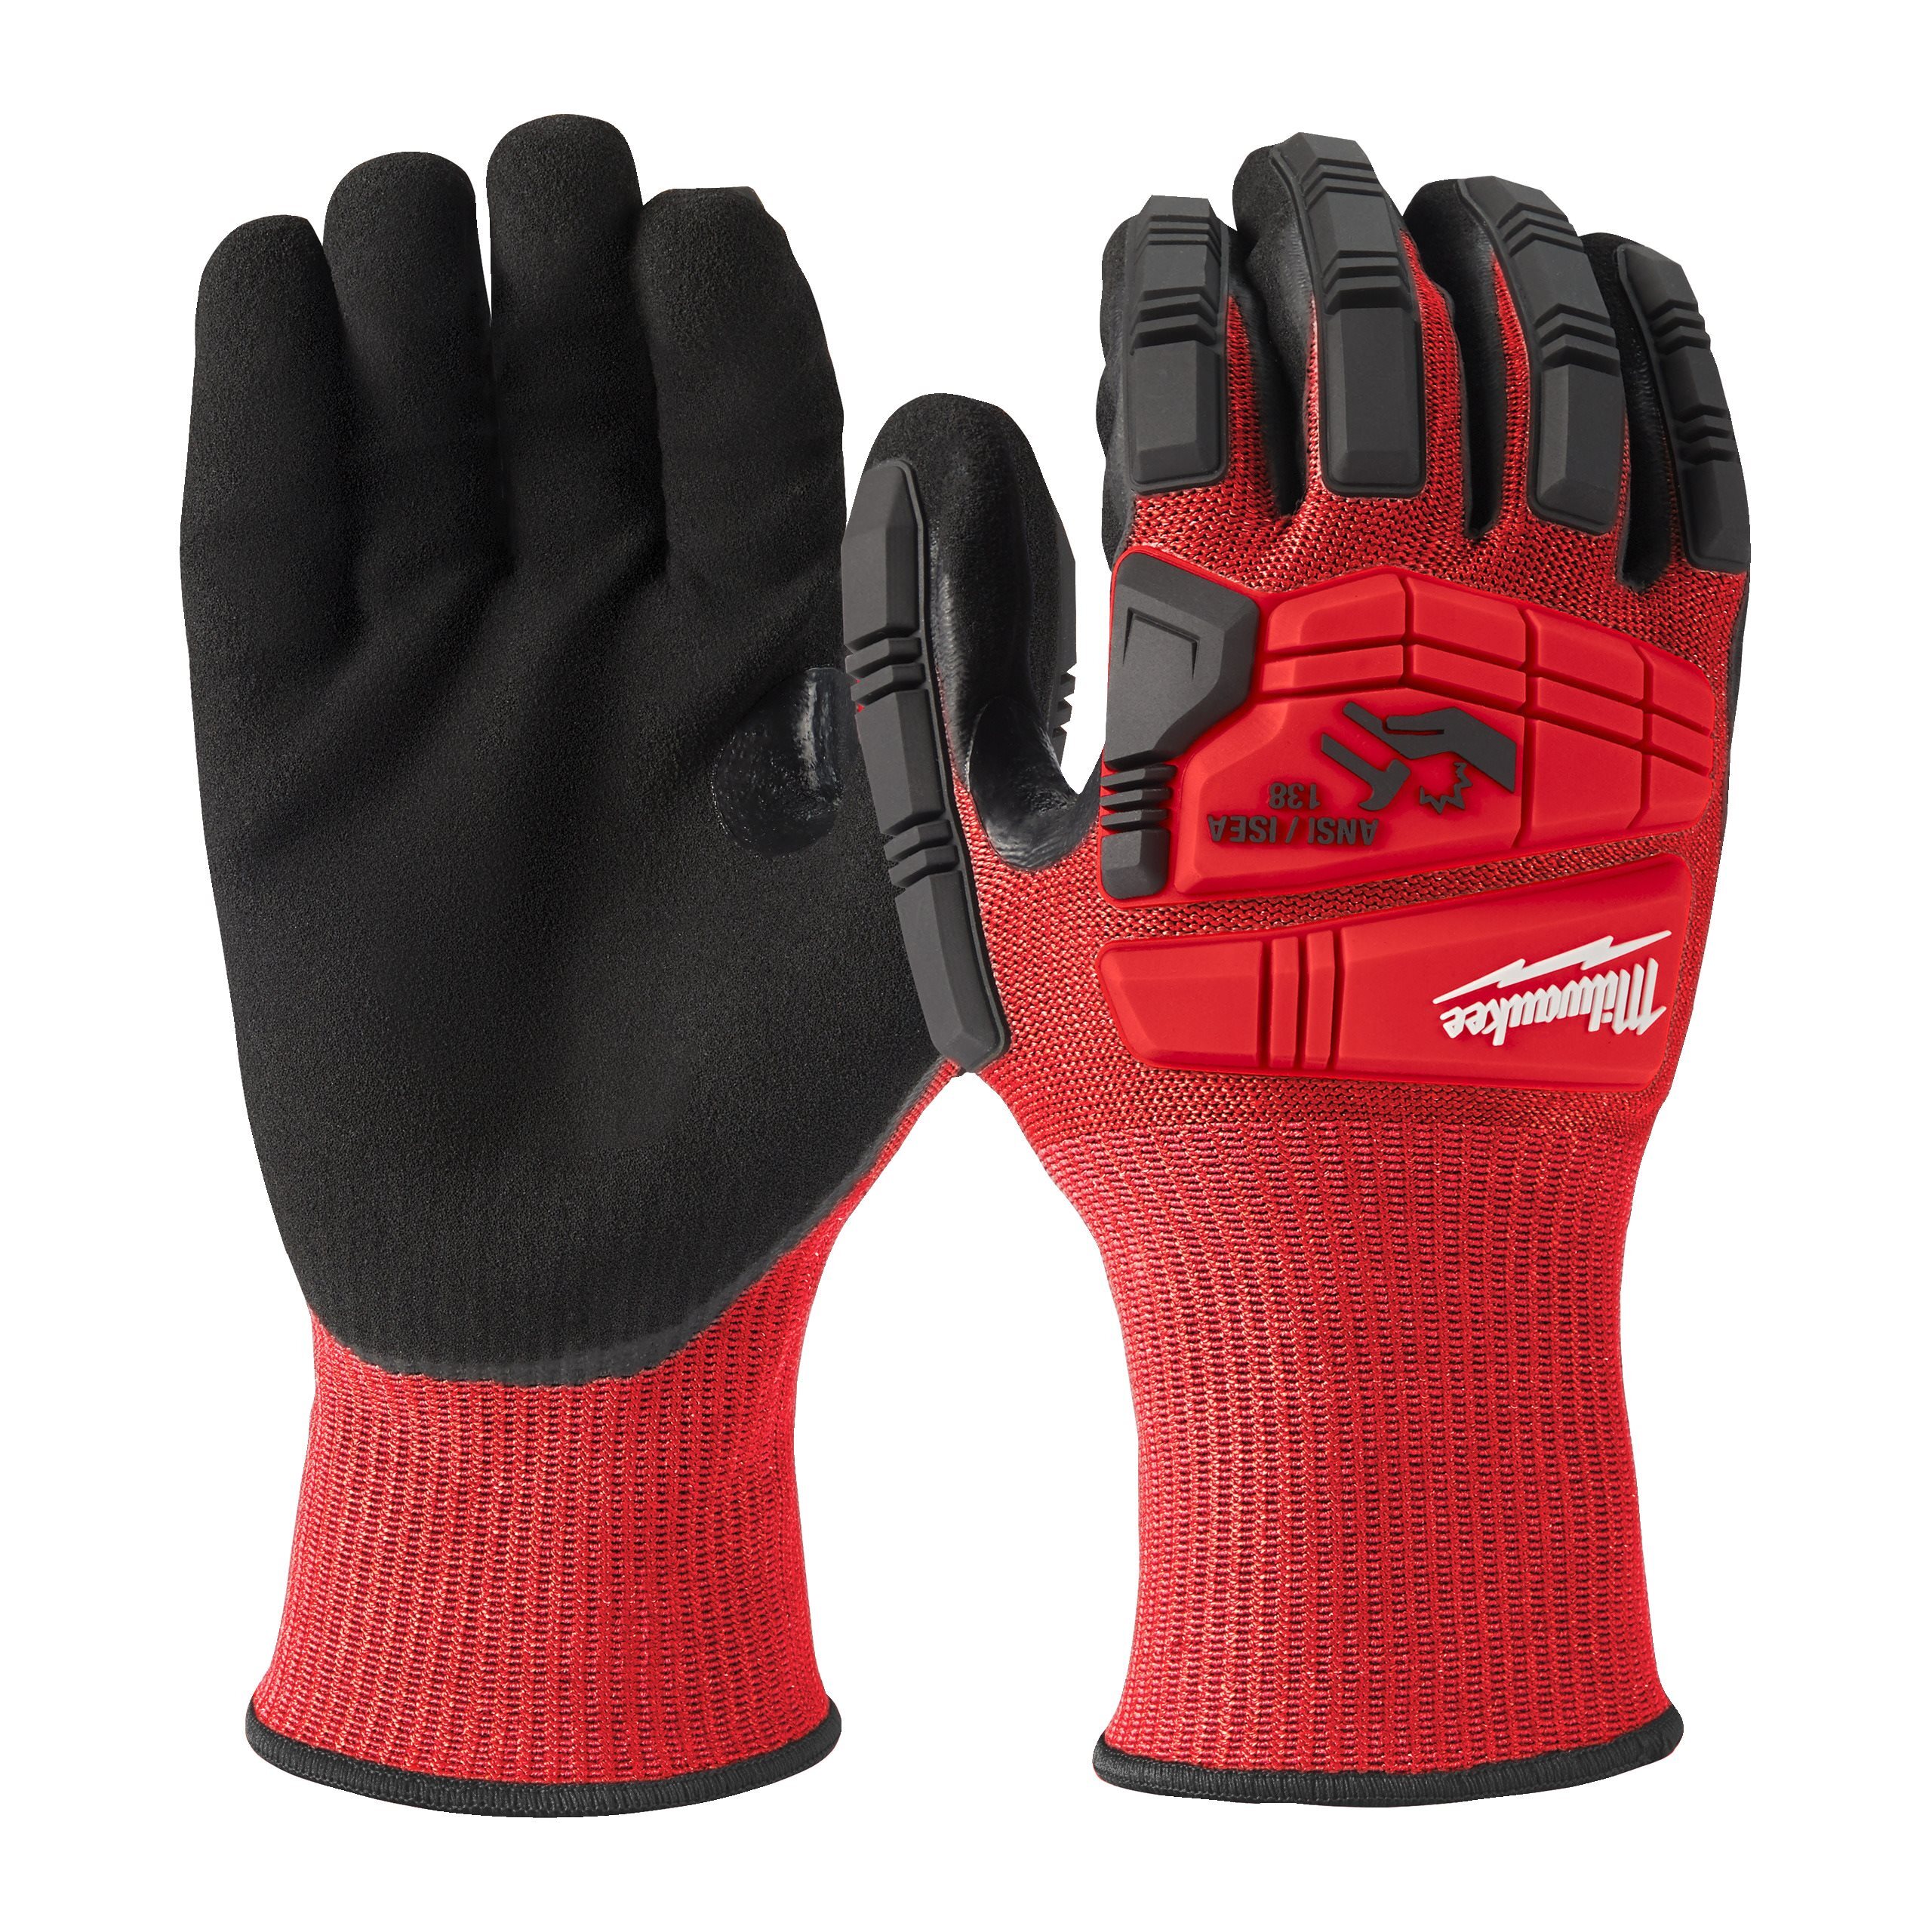 Перчатки защитные Milwaukee Impact Cut Level 3/C, размер L/9, 4932478128 полуобливные перчатки с нитриловым покрытием манжета nitras premium р 10 3410p